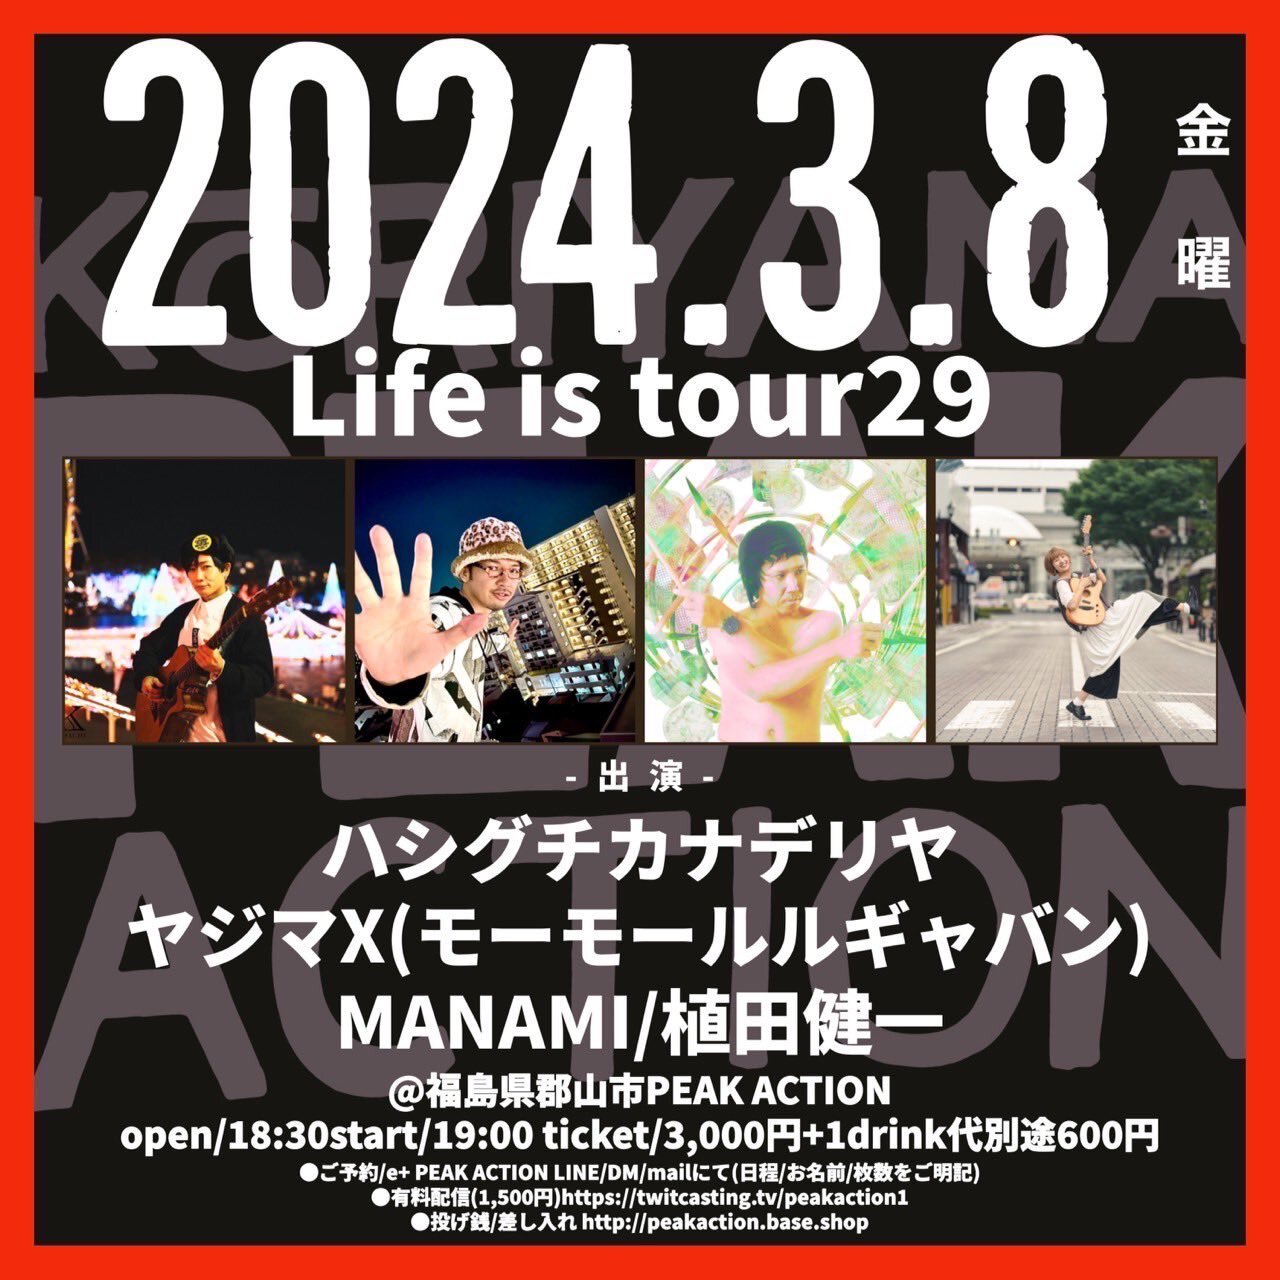 ハシグチカナデリヤLife is tour 29